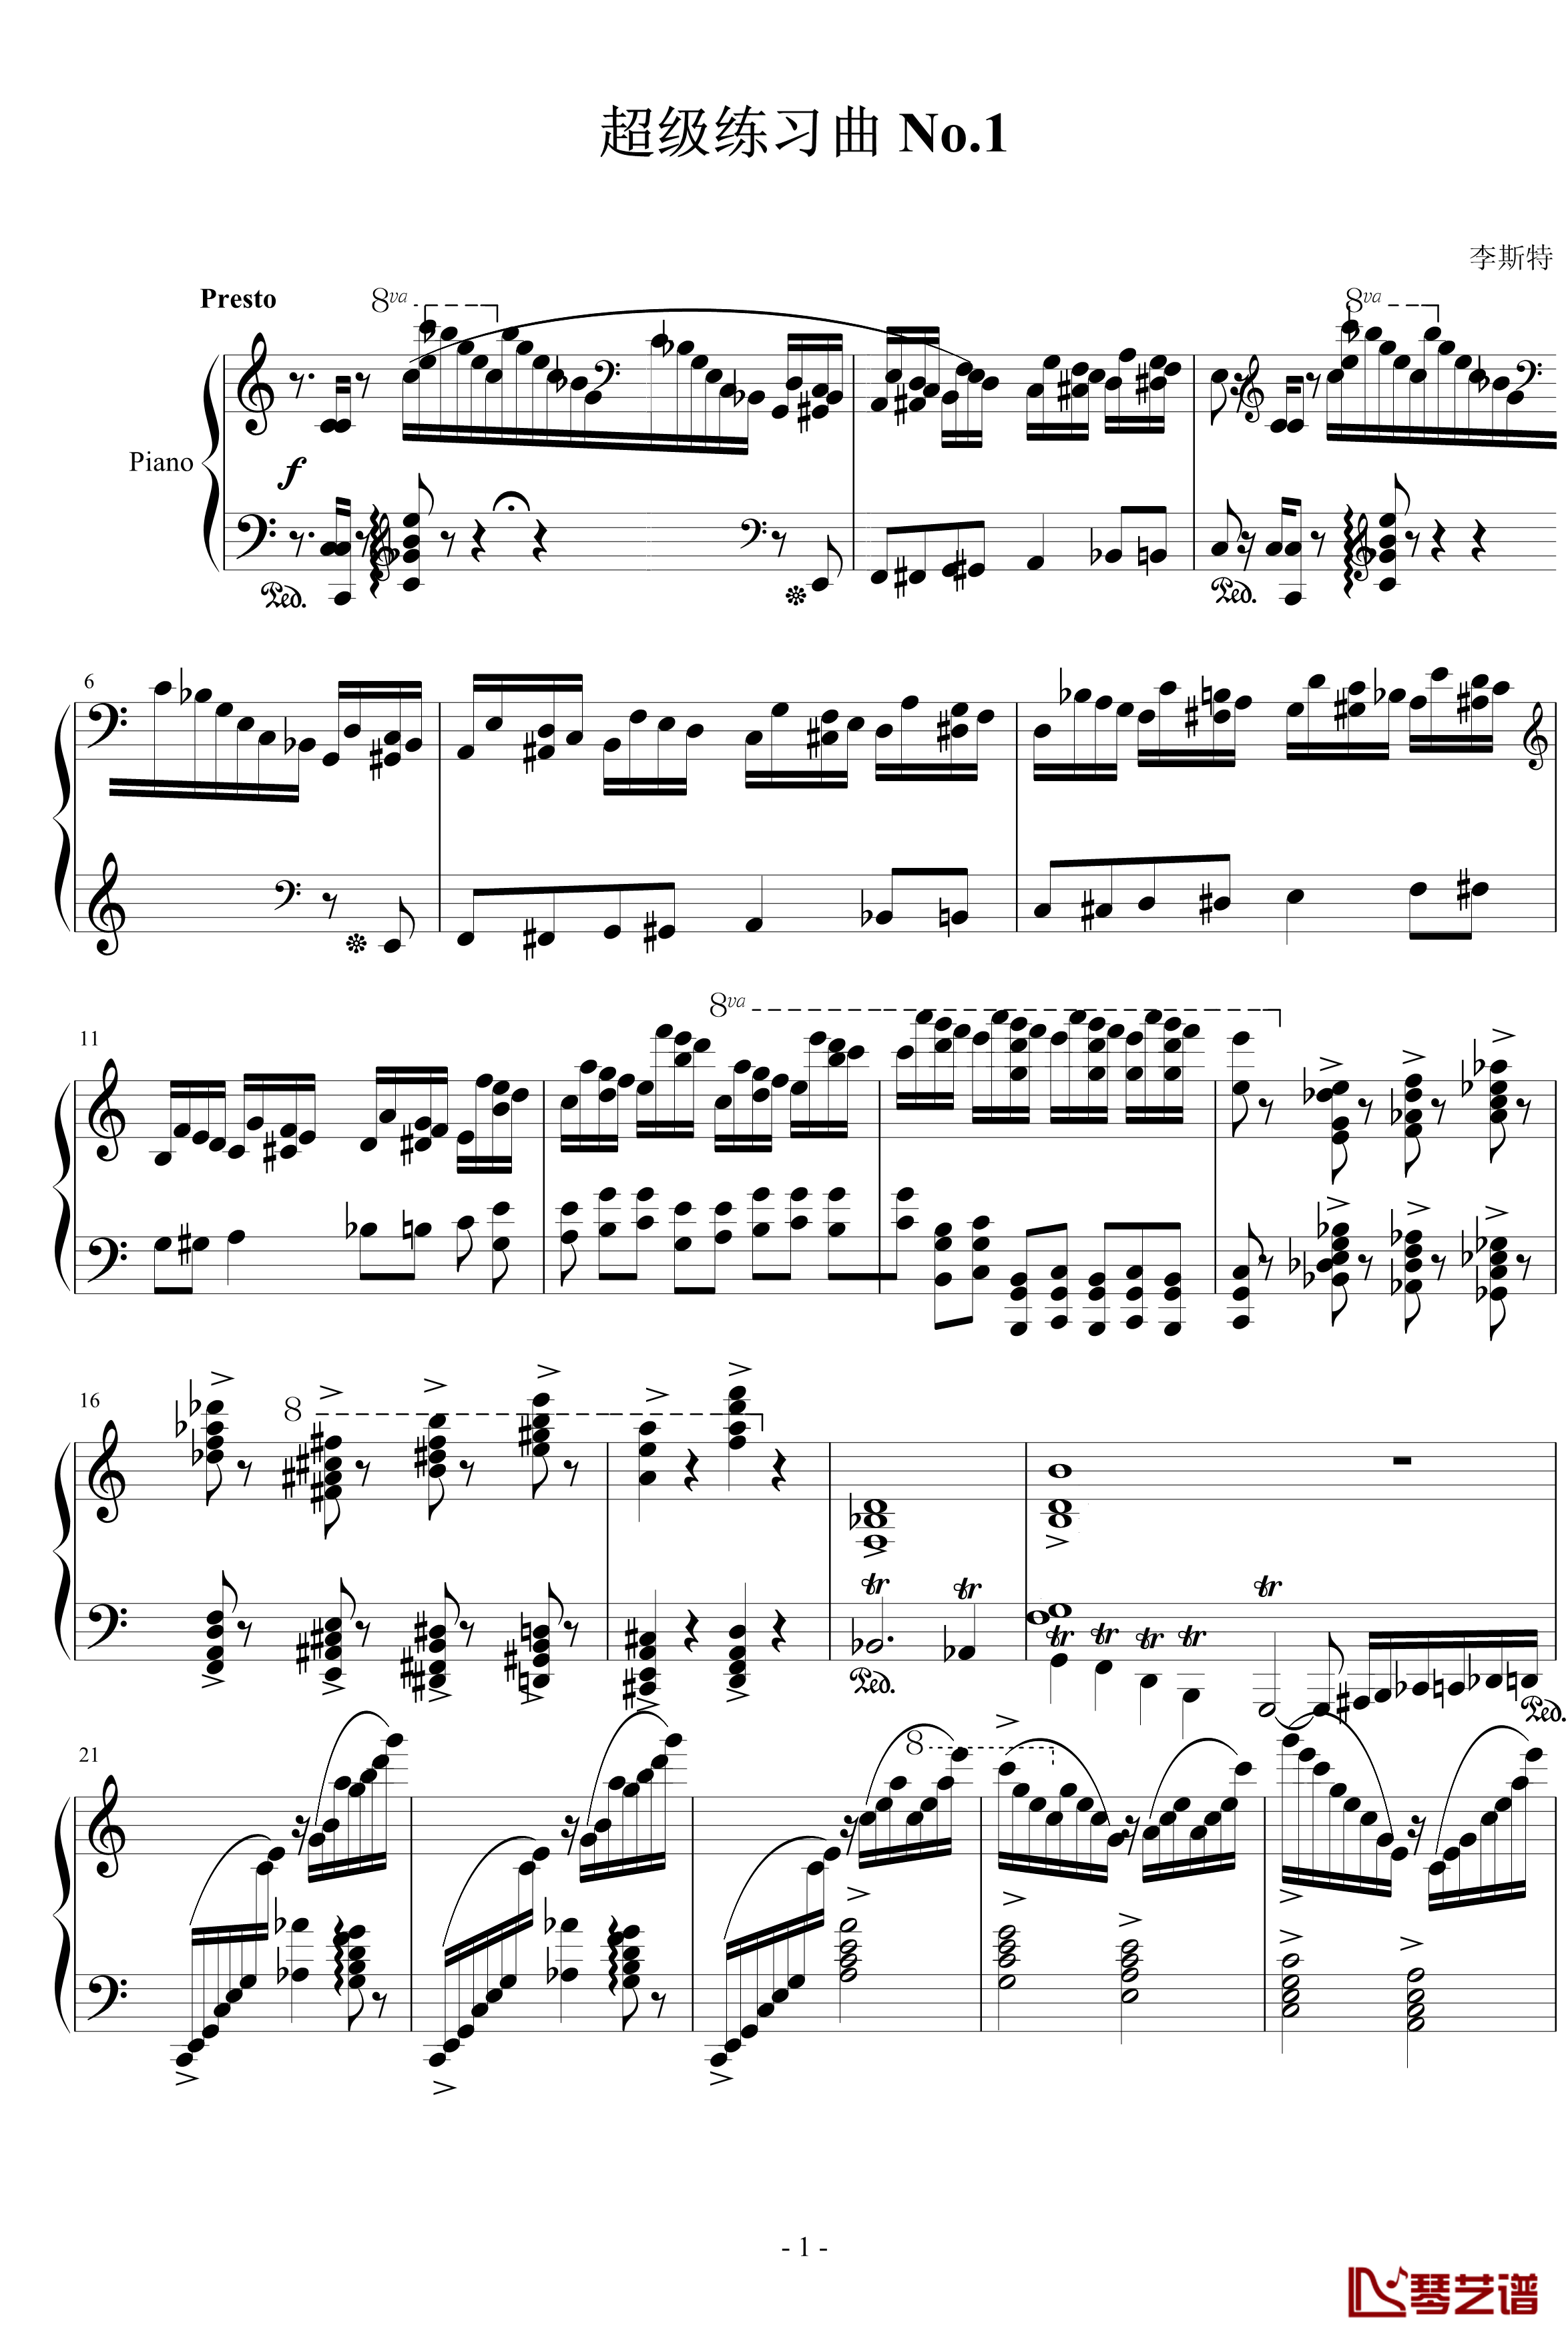 超级练习曲钢琴谱-李斯特1